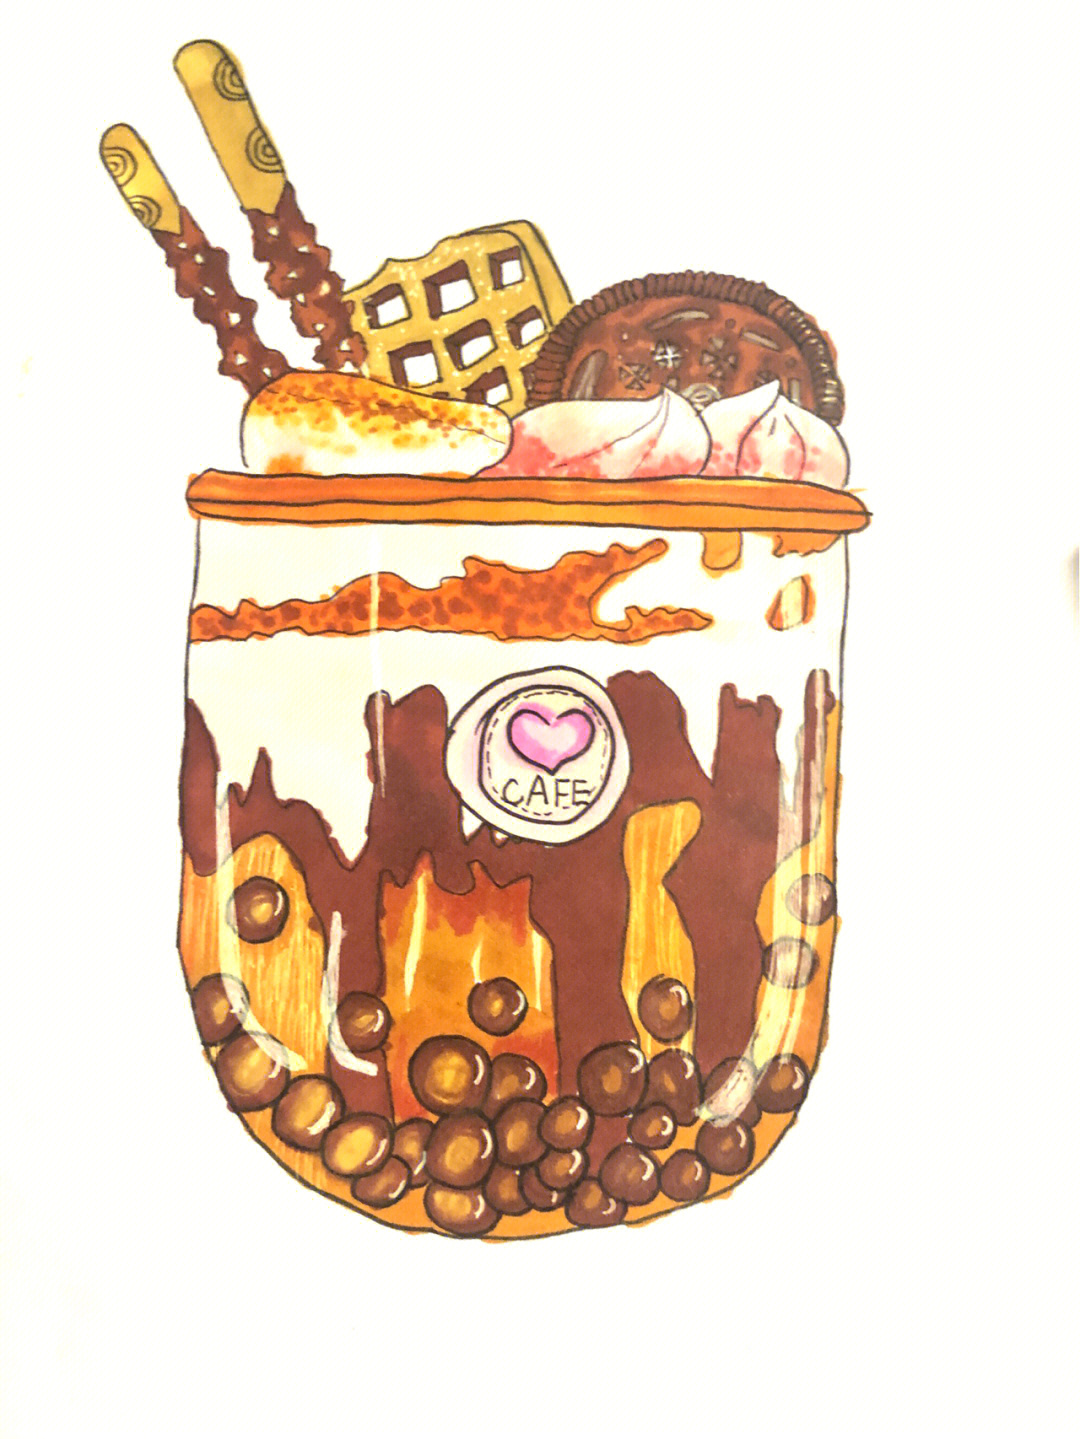 奶茶的素描画法图片